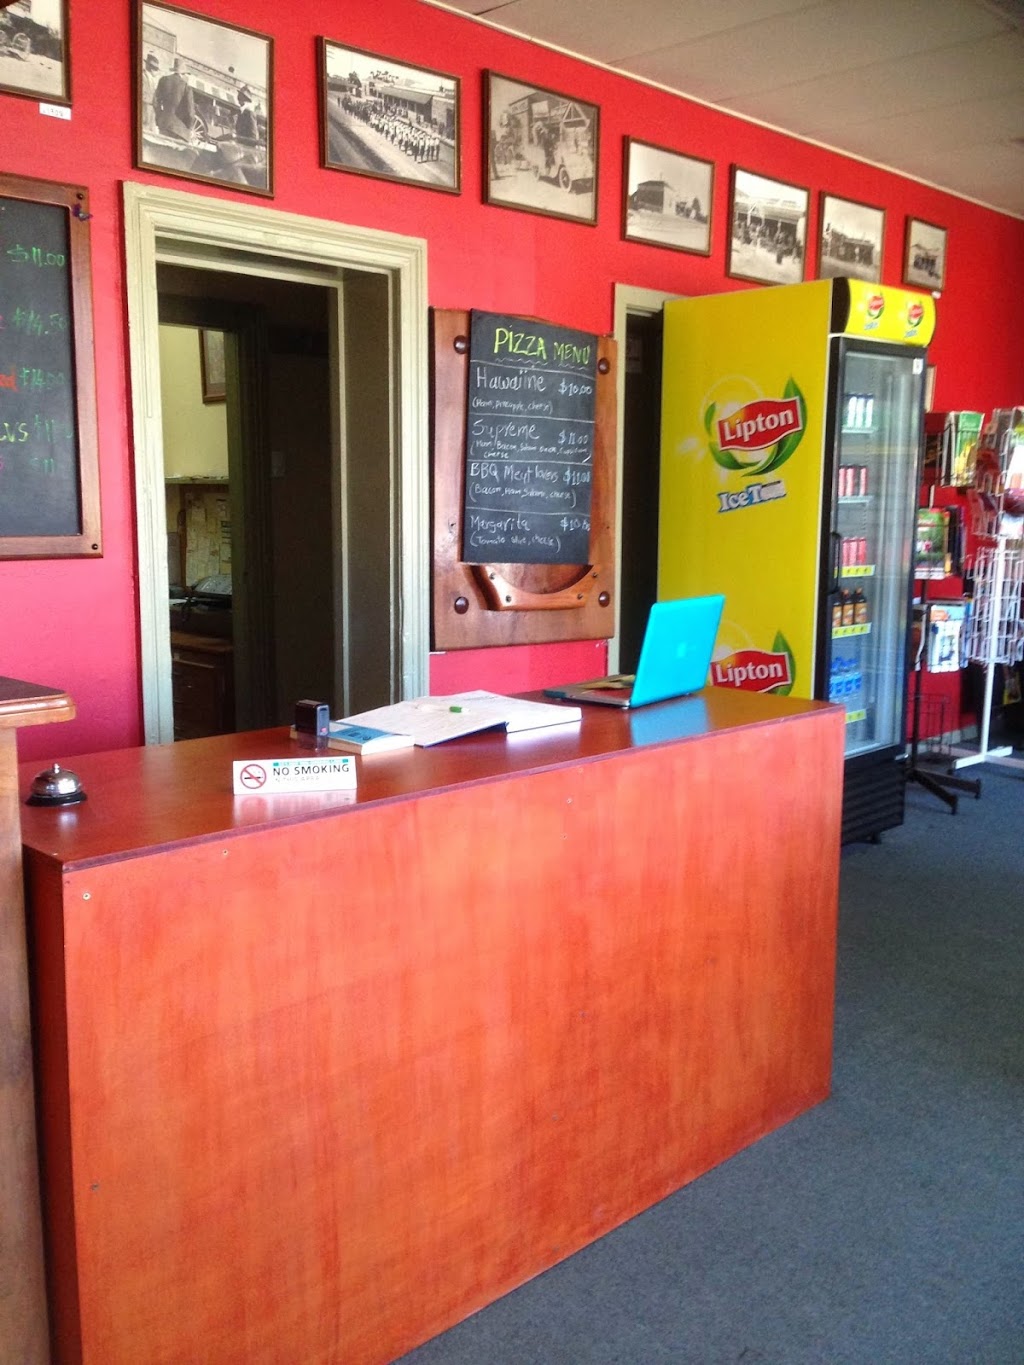 Weighbridge Motel Cafe & Take Away | lodging | 45-47 Moorundie St, Truro SA 5356, Australia | 0885640400 OR +61 8 8564 0400